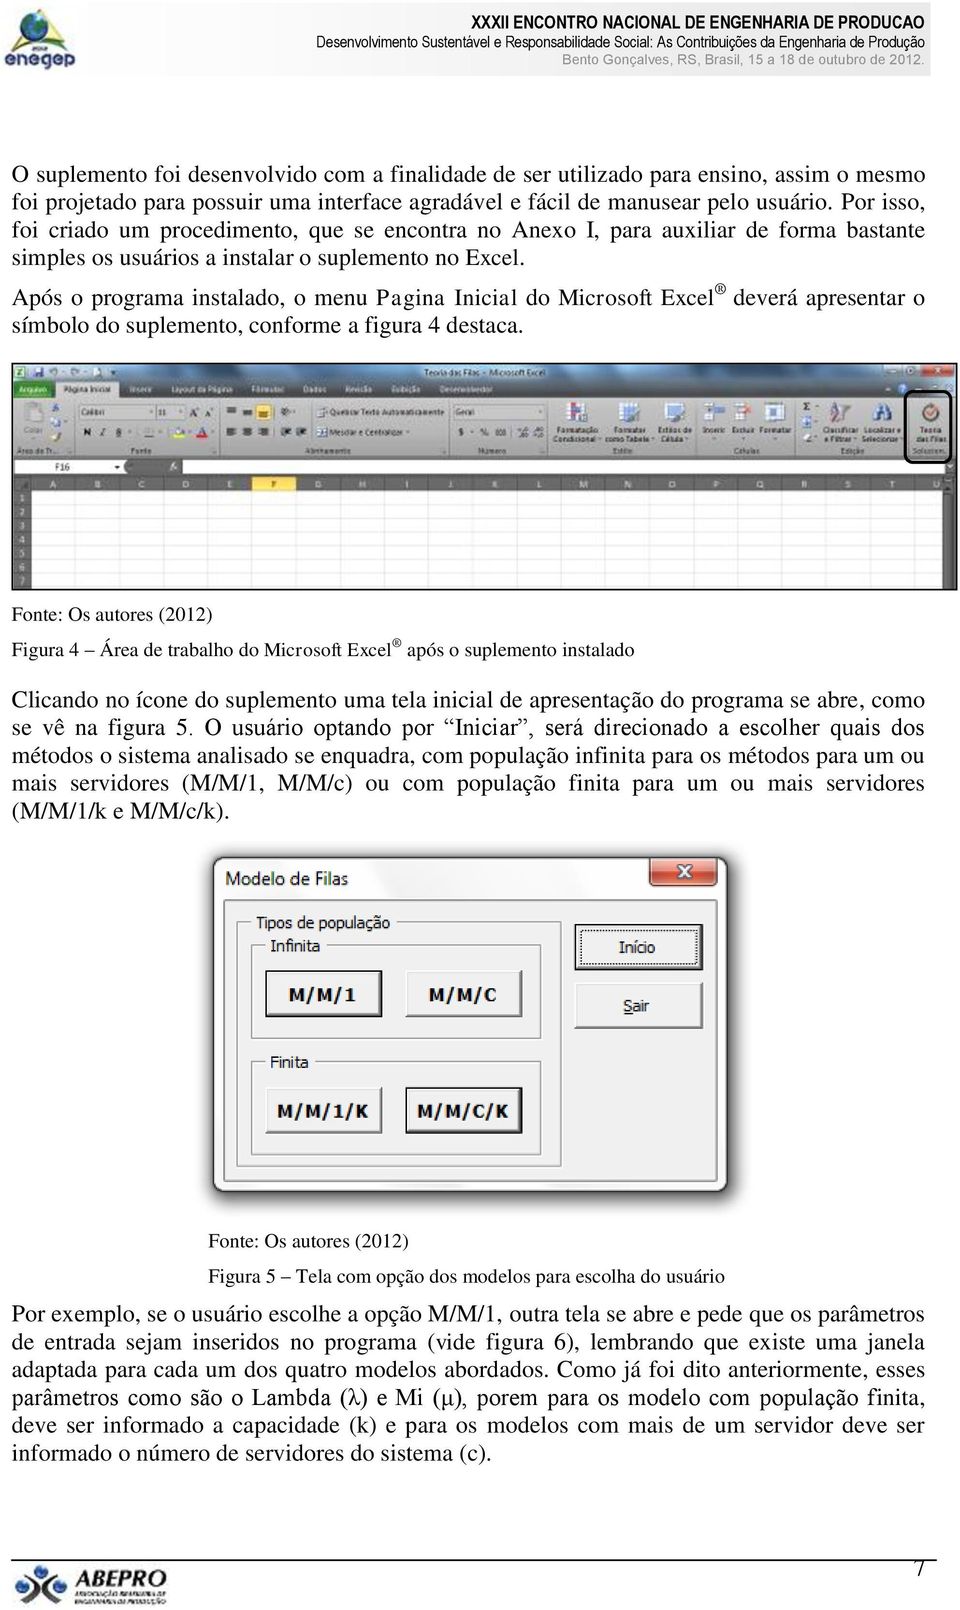 Após o programa instalado, o menu Pagina Inicial do Microsoft Excel deverá apresentar o símbolo do suplemento, conforme a figura 4 destaca.